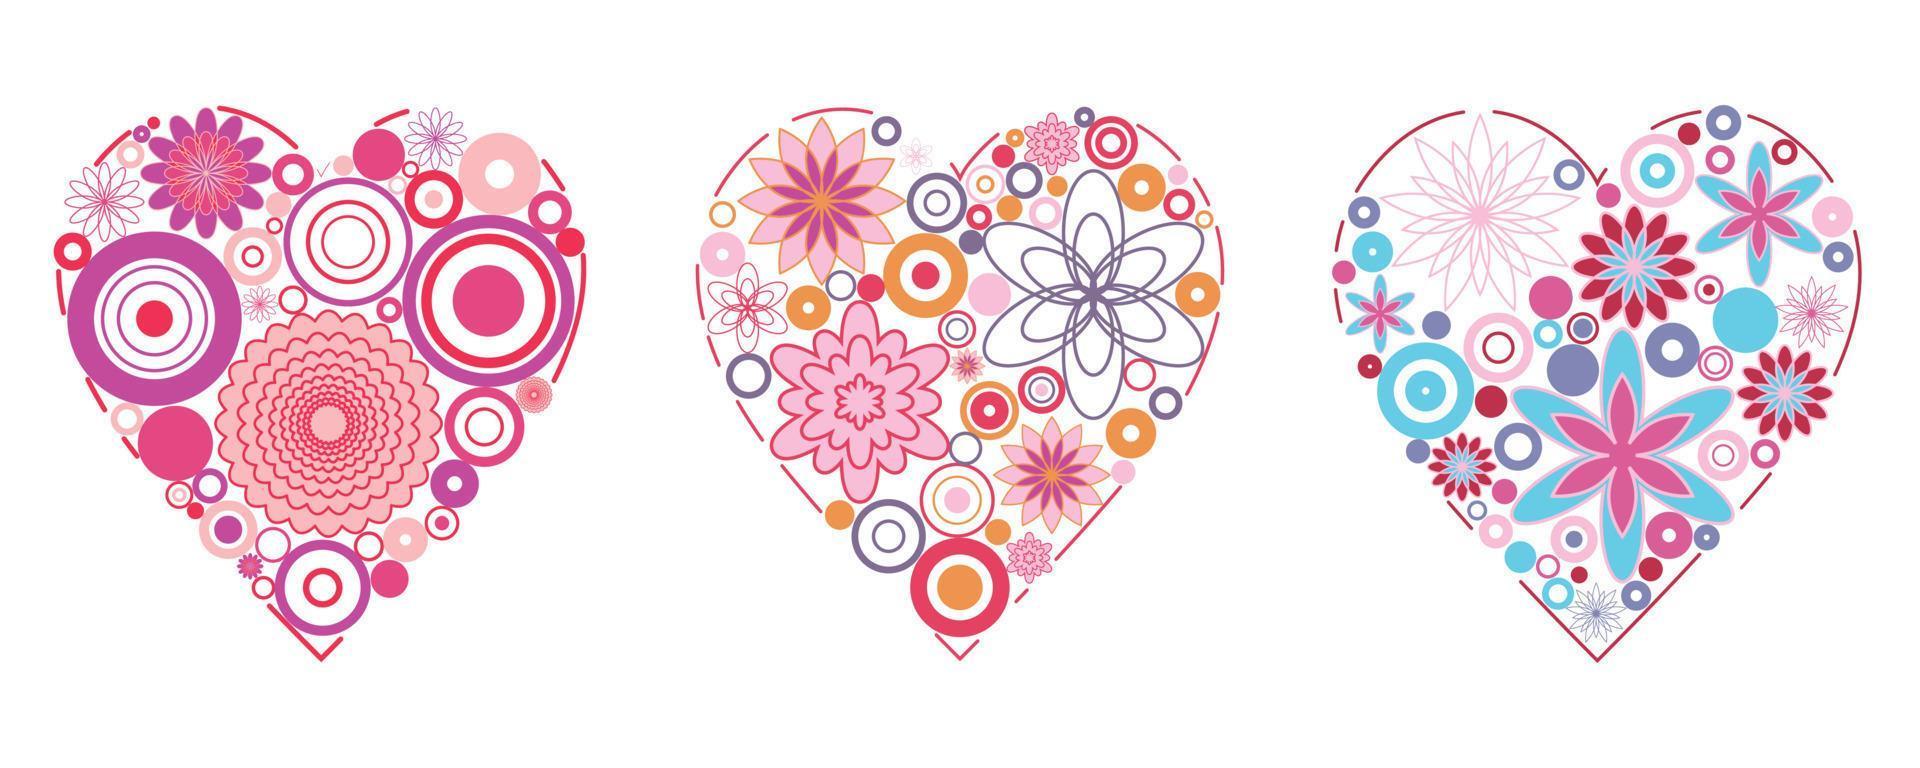 geometri blomma cirkel mönster i hjärtan form ikon vektor illustrationer eps10